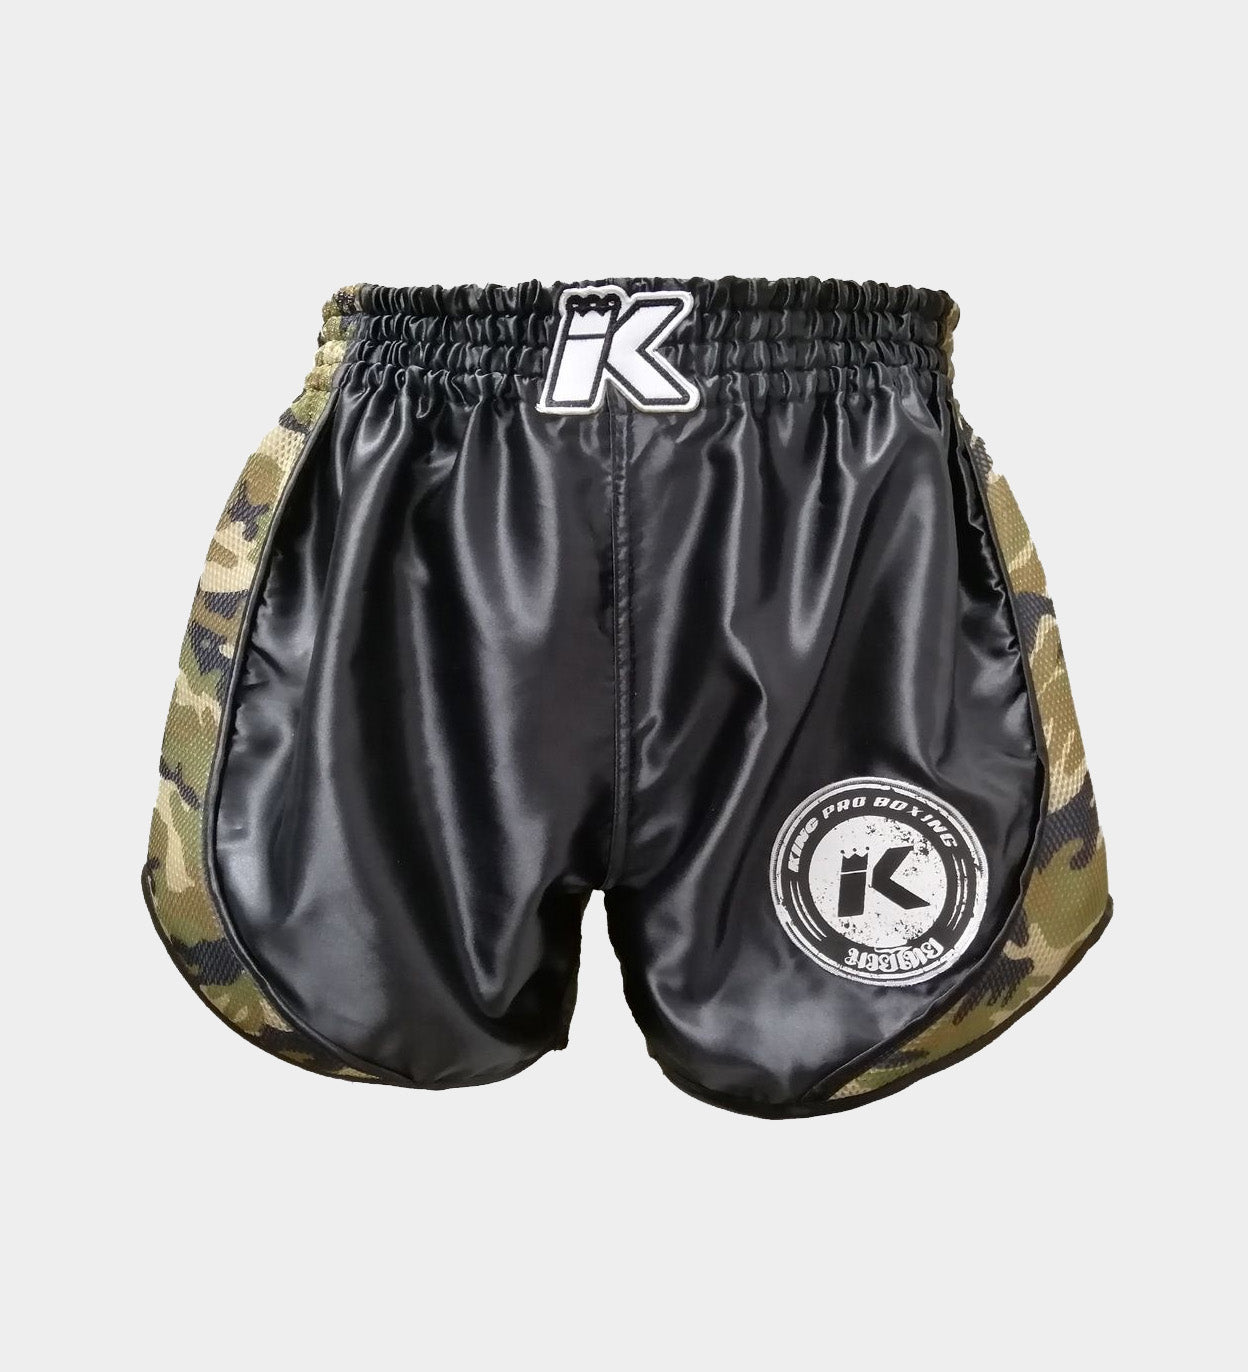 King Pro Boxing Kickboks Broekje - Zwart/Camo